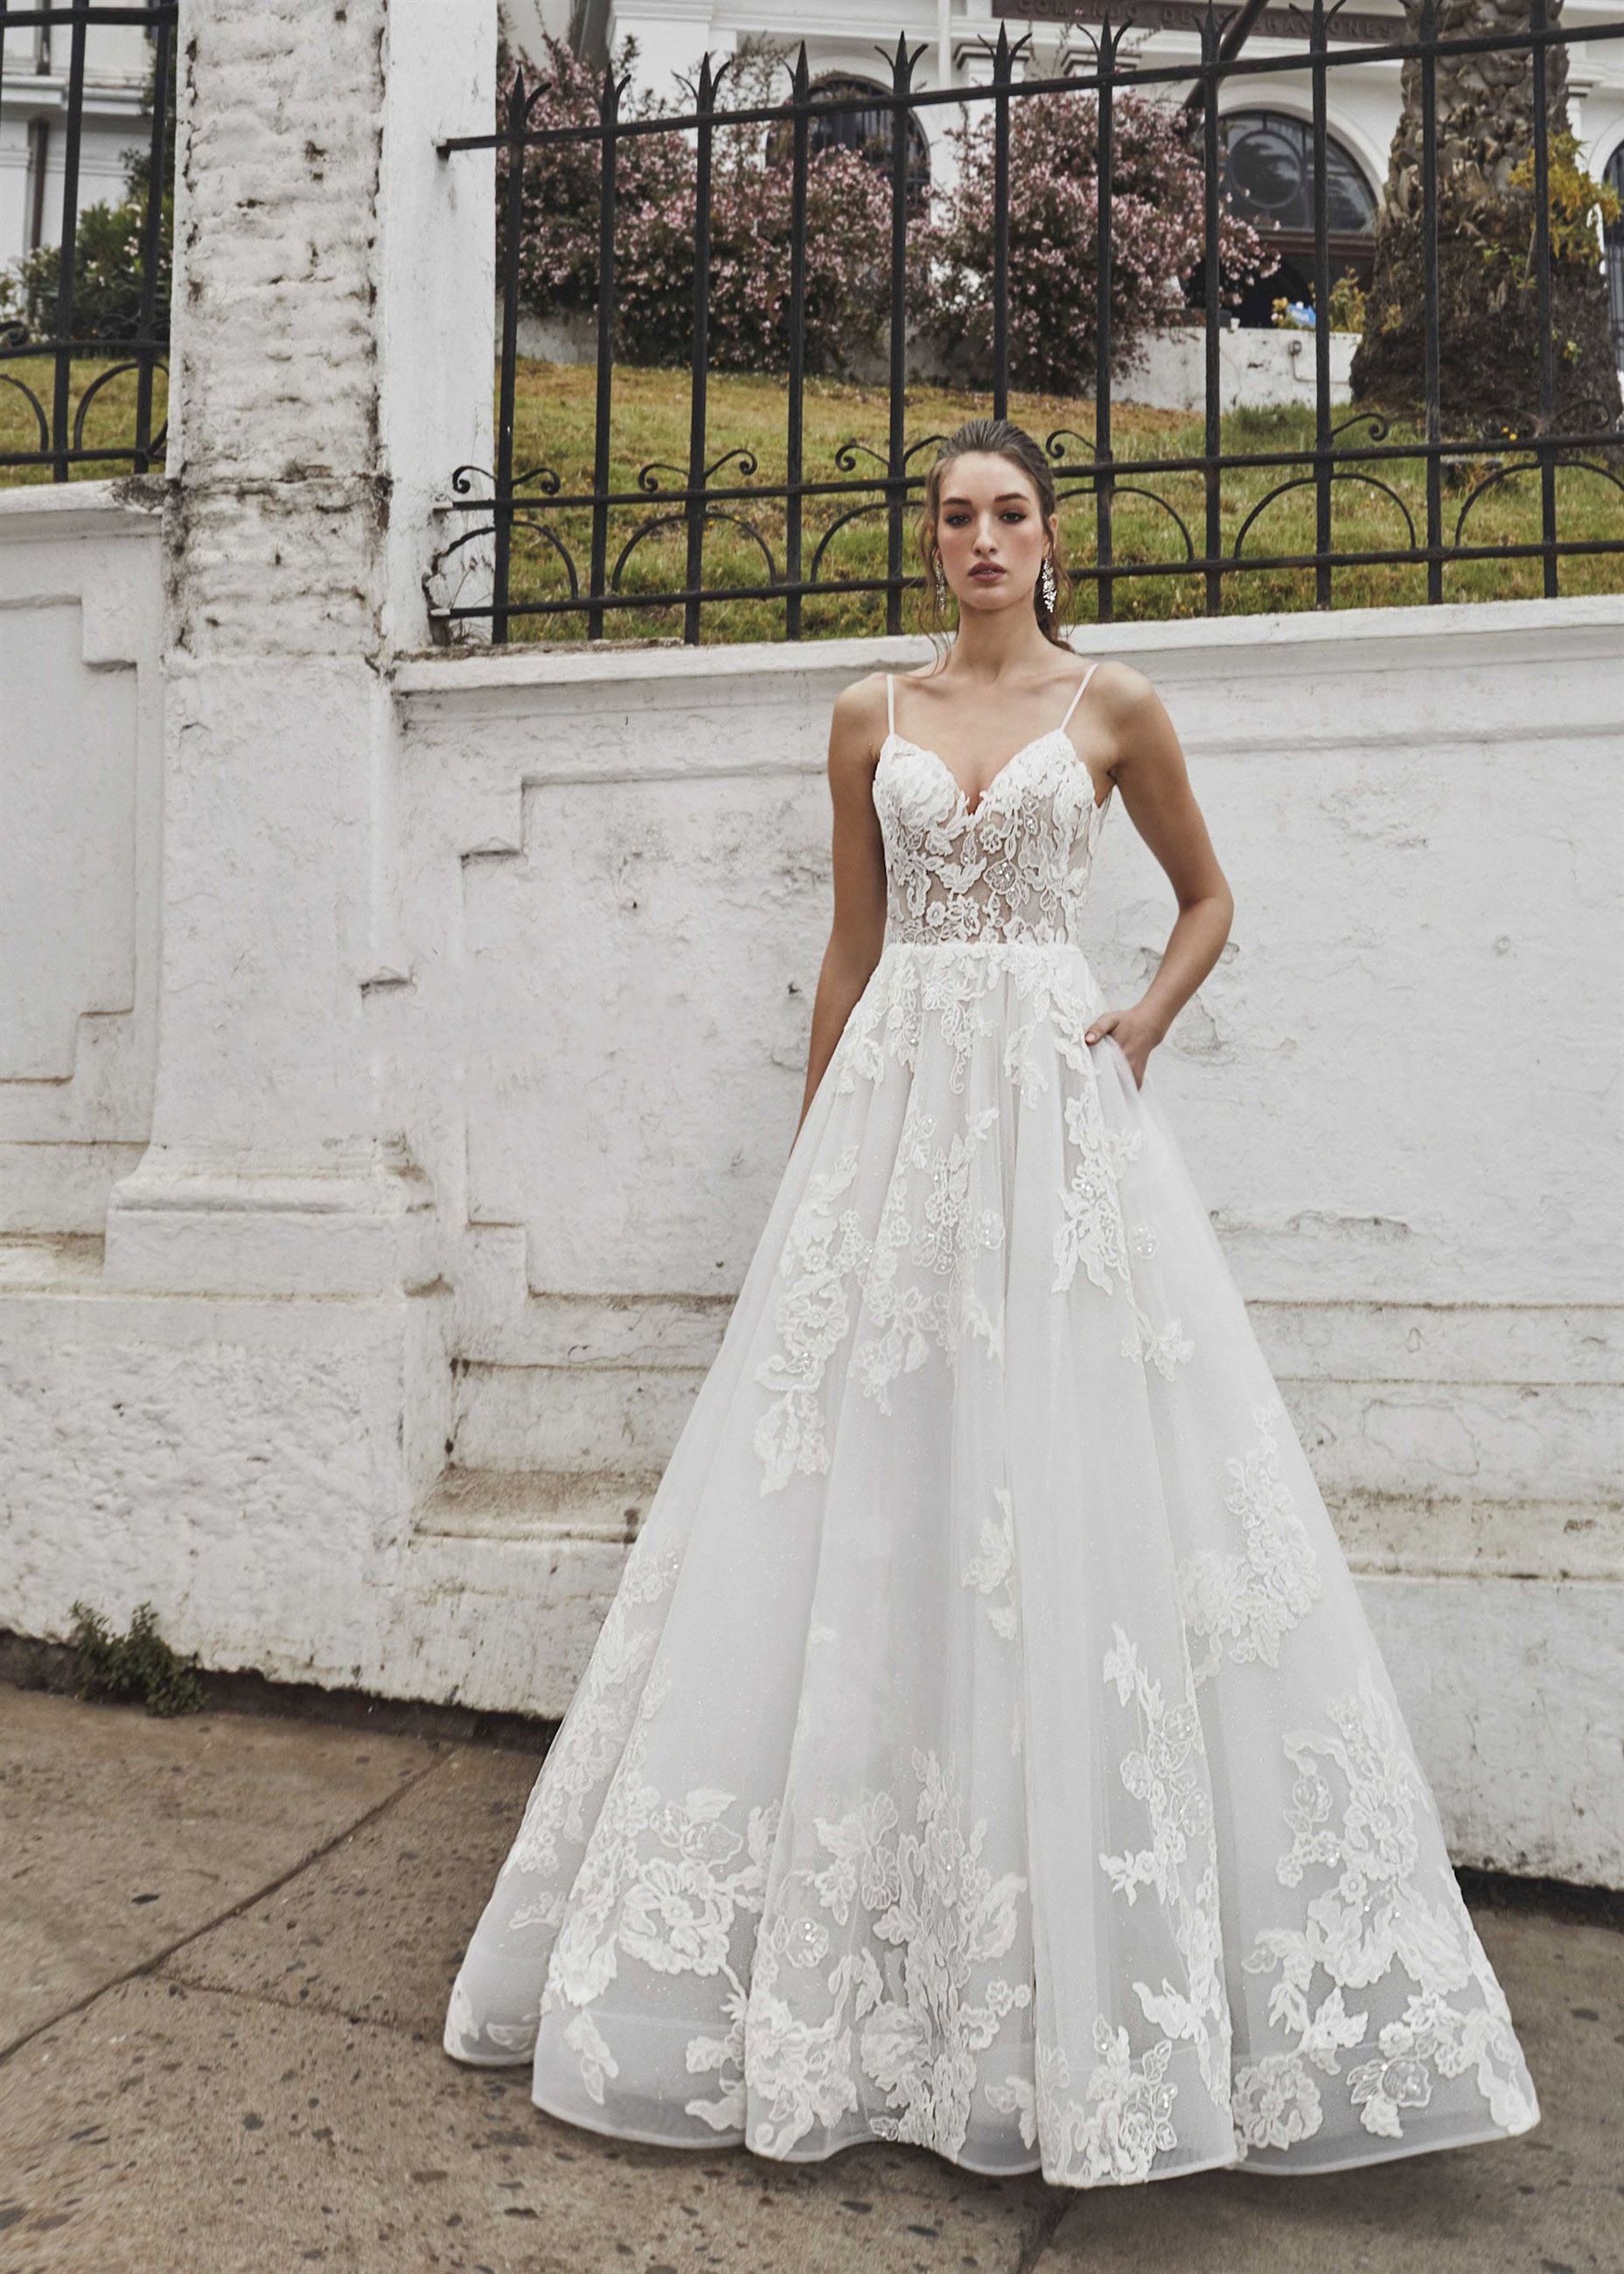 Calla Blanche wedding gown